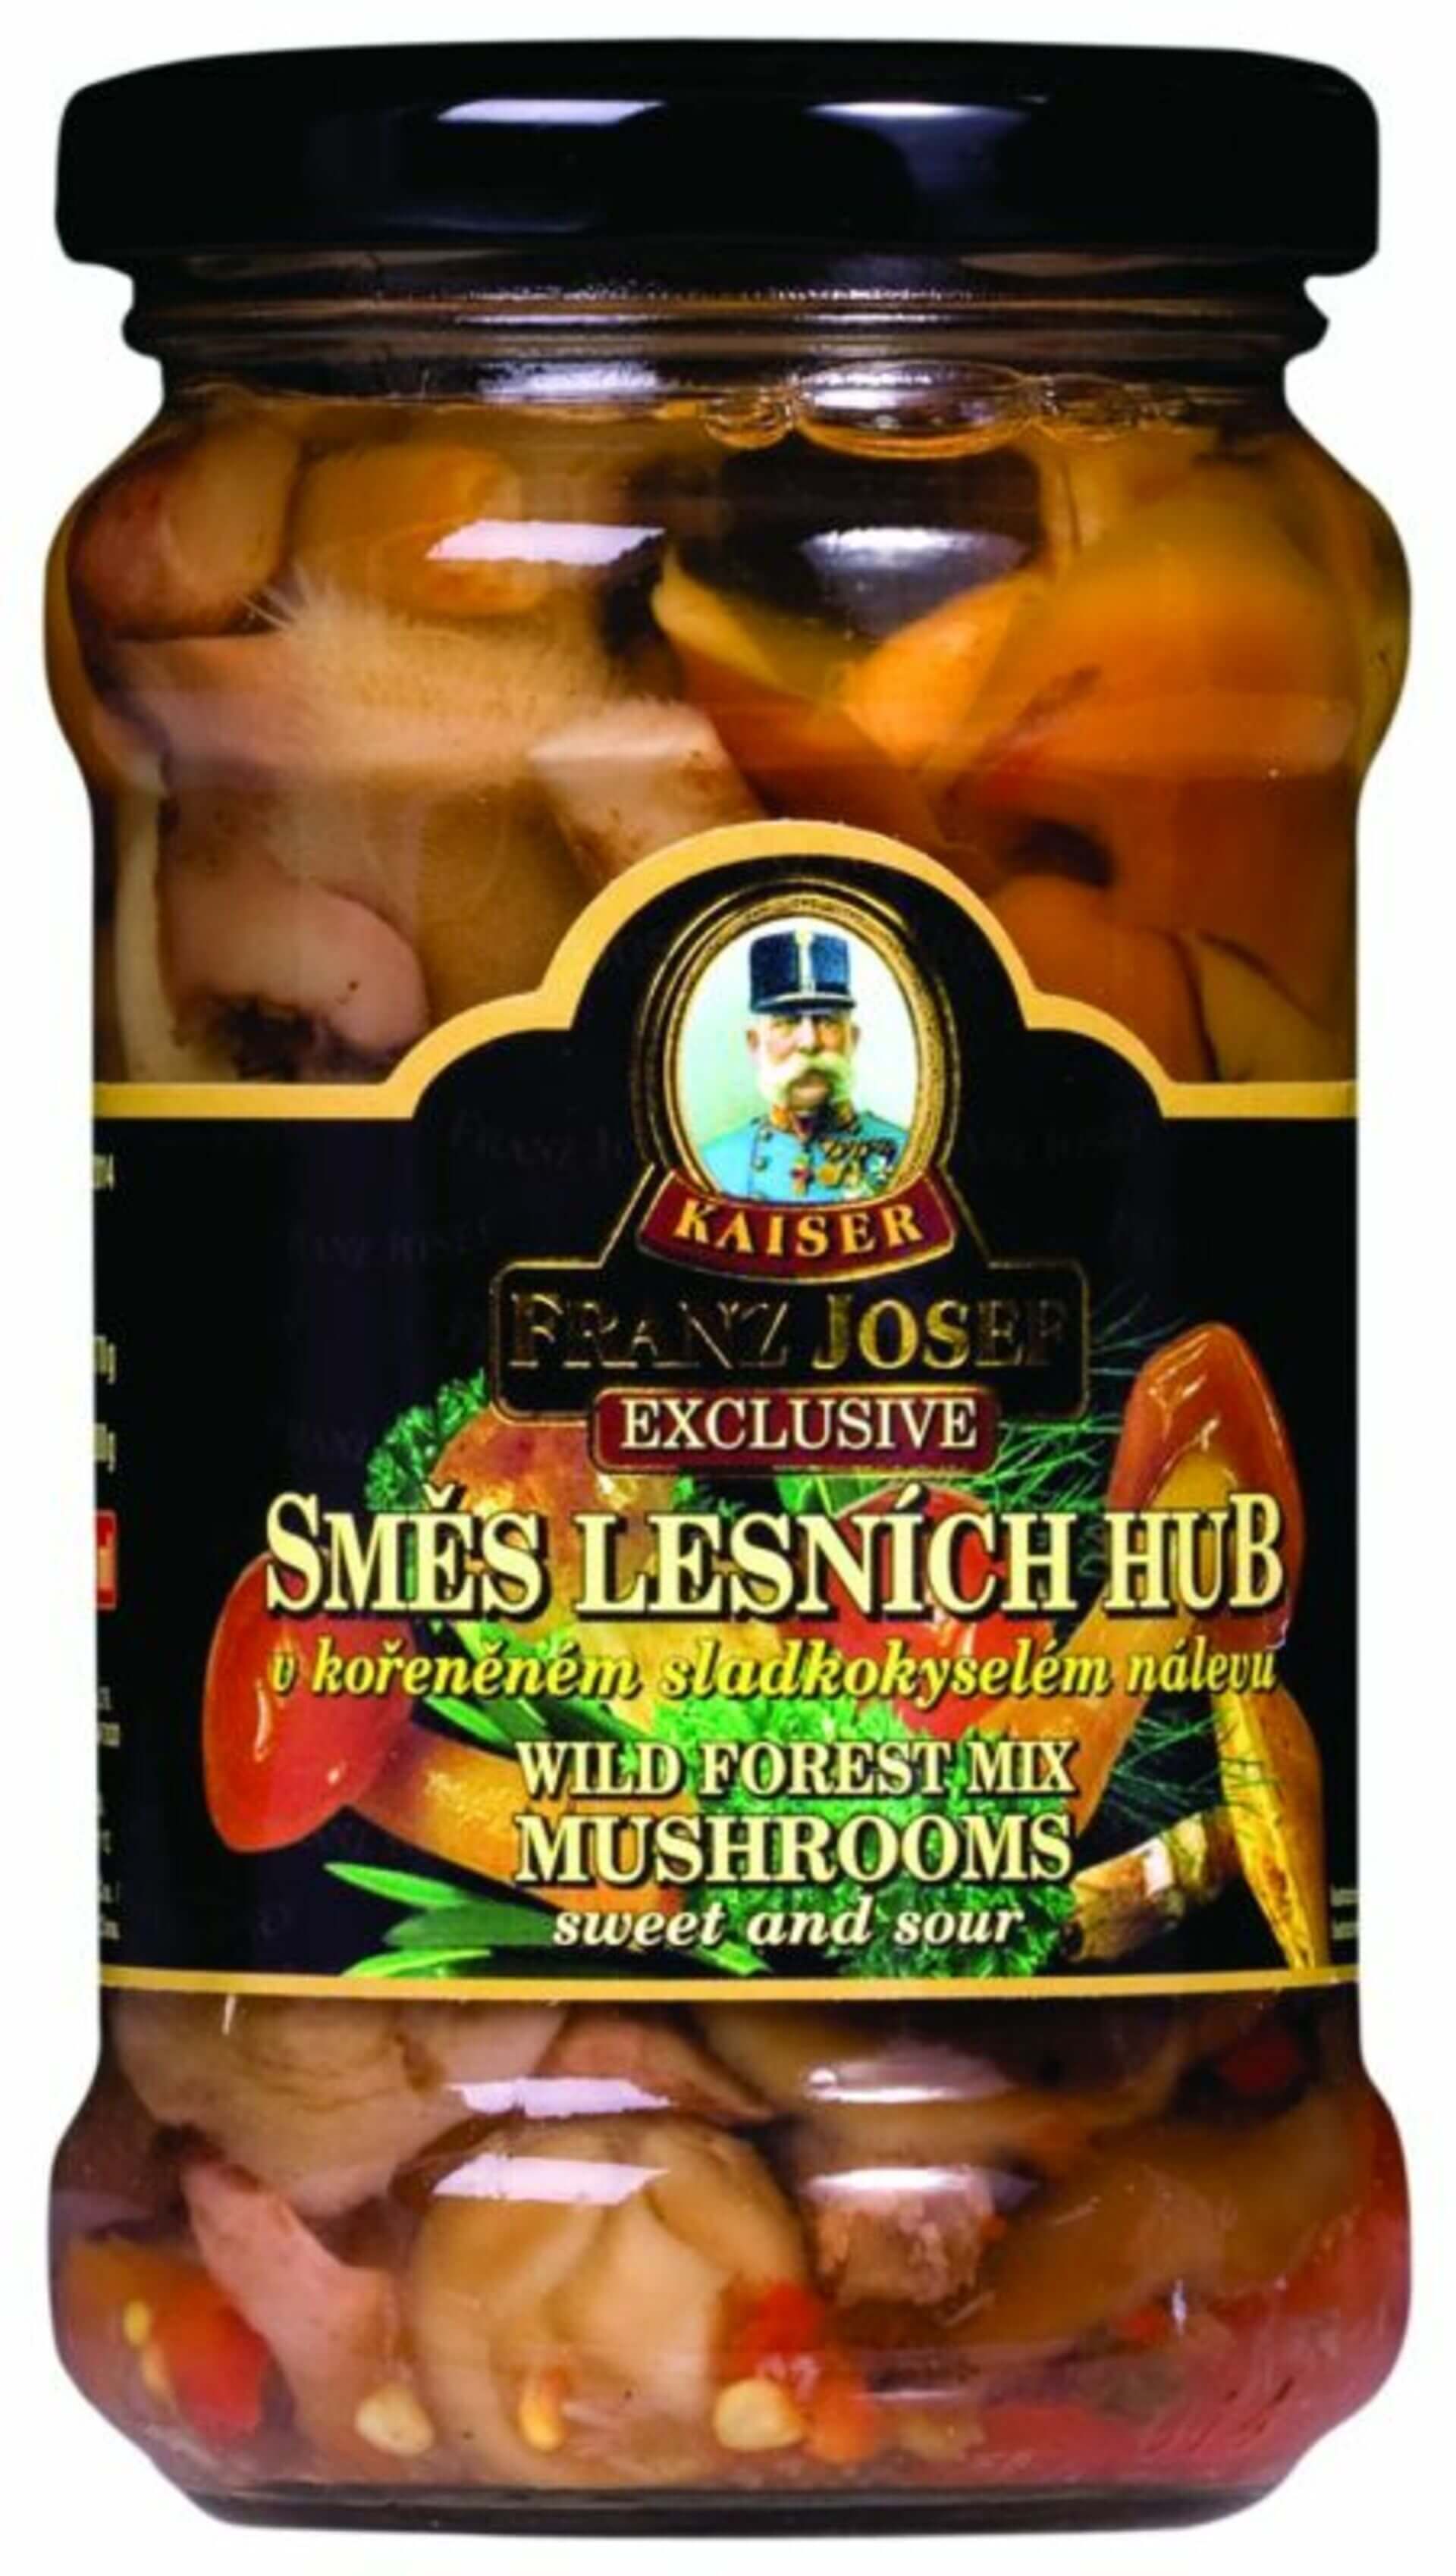 Levně Franz Josef Kaiser Směs lesních hub v sladkokyselém nálevu 314 ml (280 g)